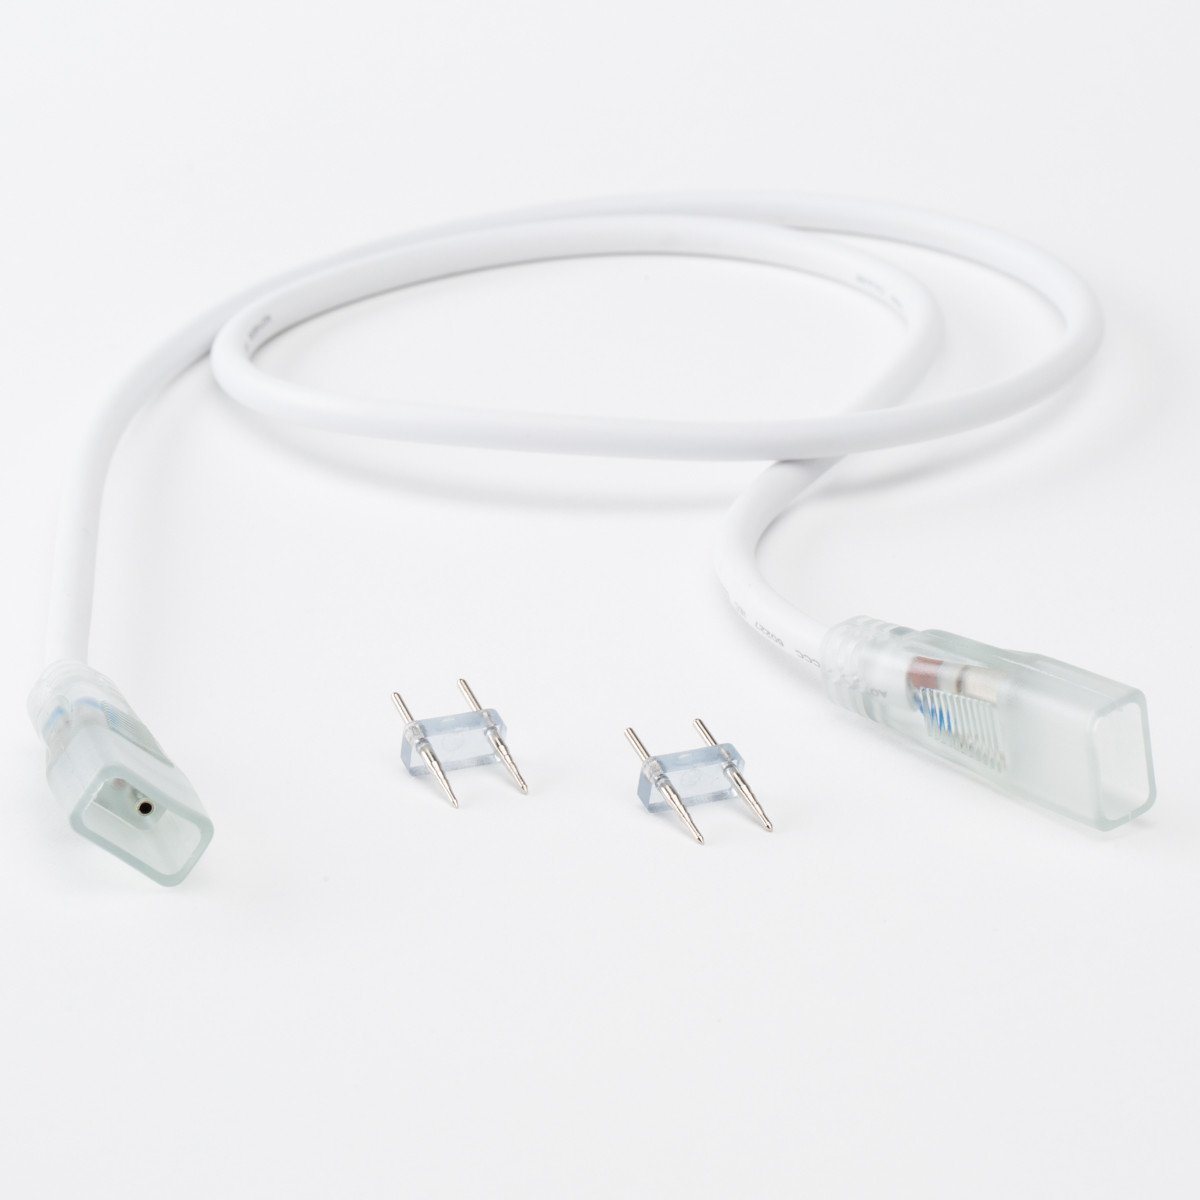 LED Strip Jumper Cable - LED Accessories - 120V LED Strip Lights